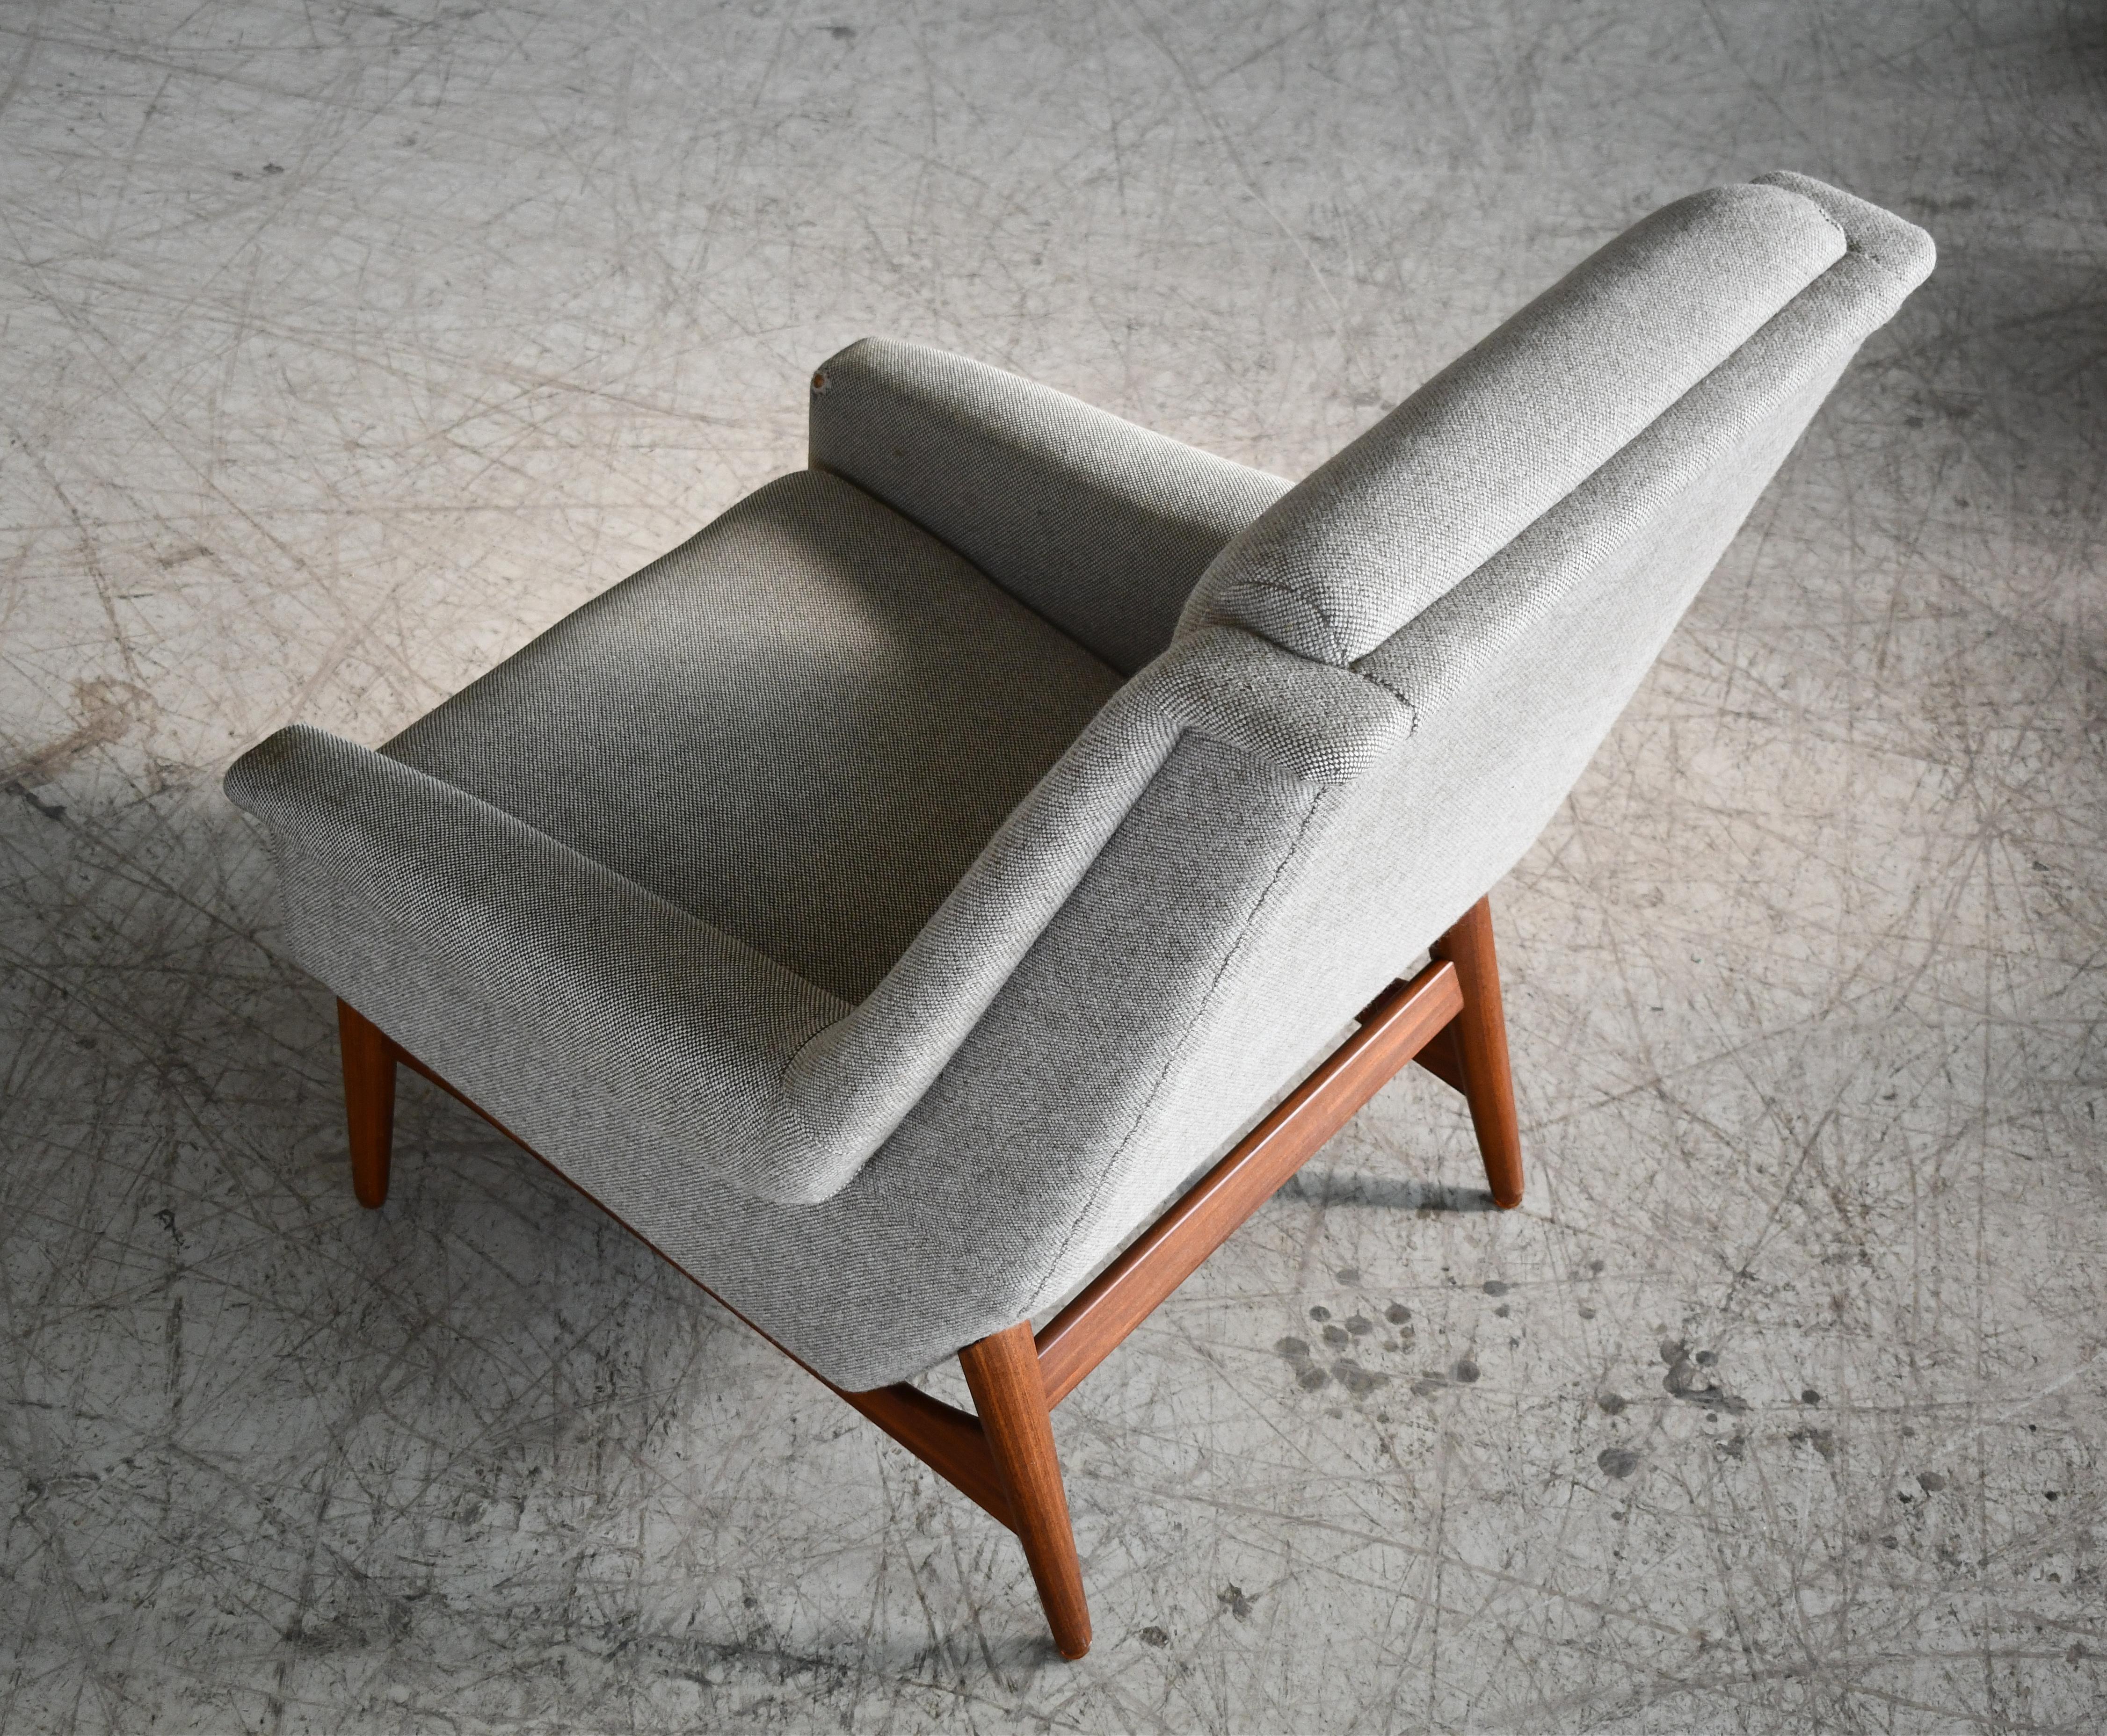 Wool Folke Ohlsson 1950s Teak Lounge Chair for Fritz Hansen Danish Mid-Century